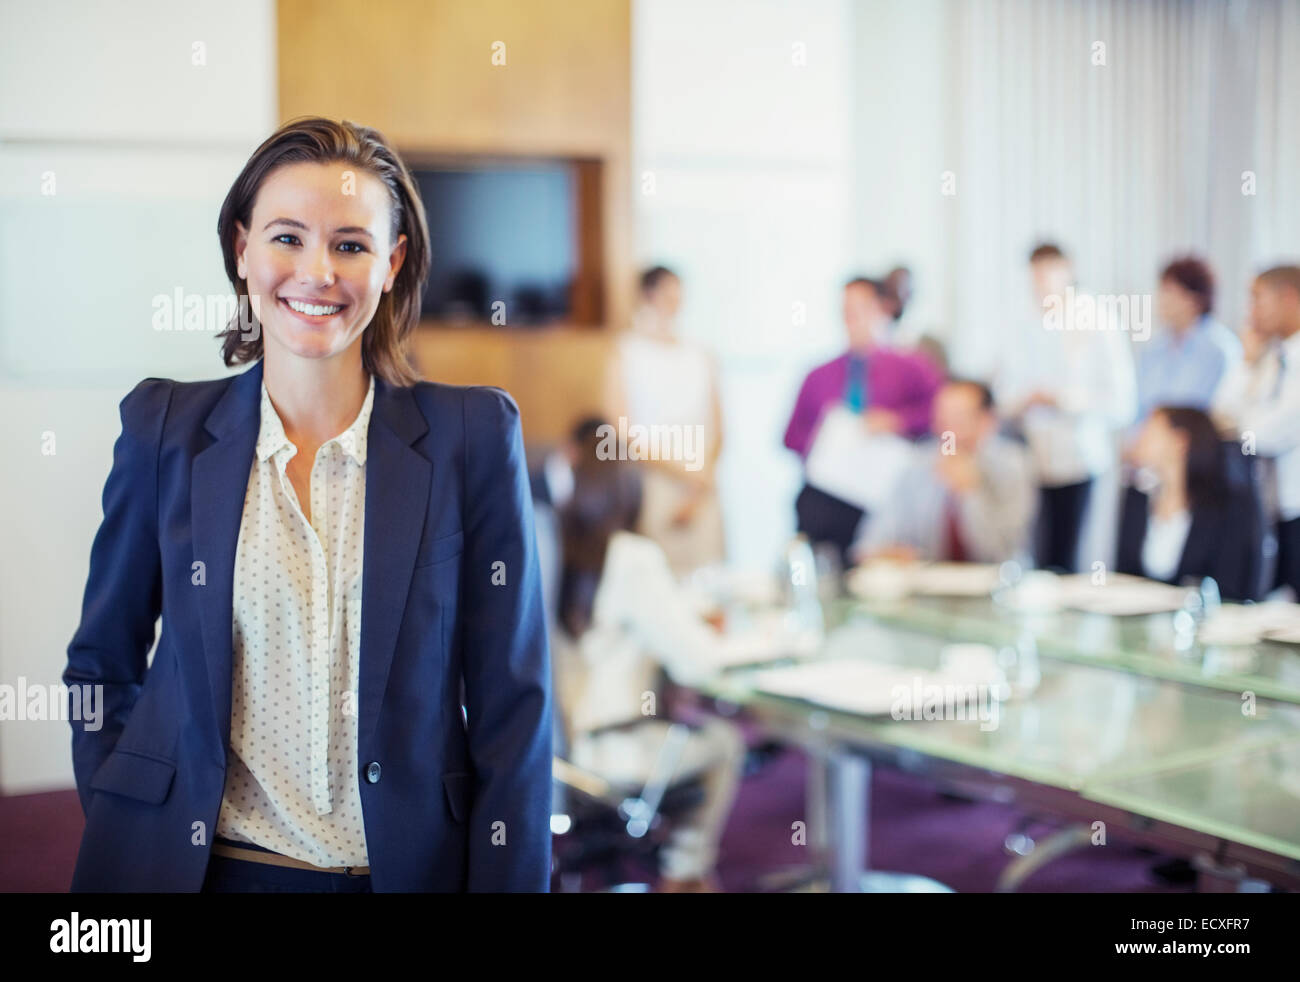 Porträt des jungen Geschäftsfrau lächelnd im Konferenzraum, Menschen im Hintergrund Stockfoto